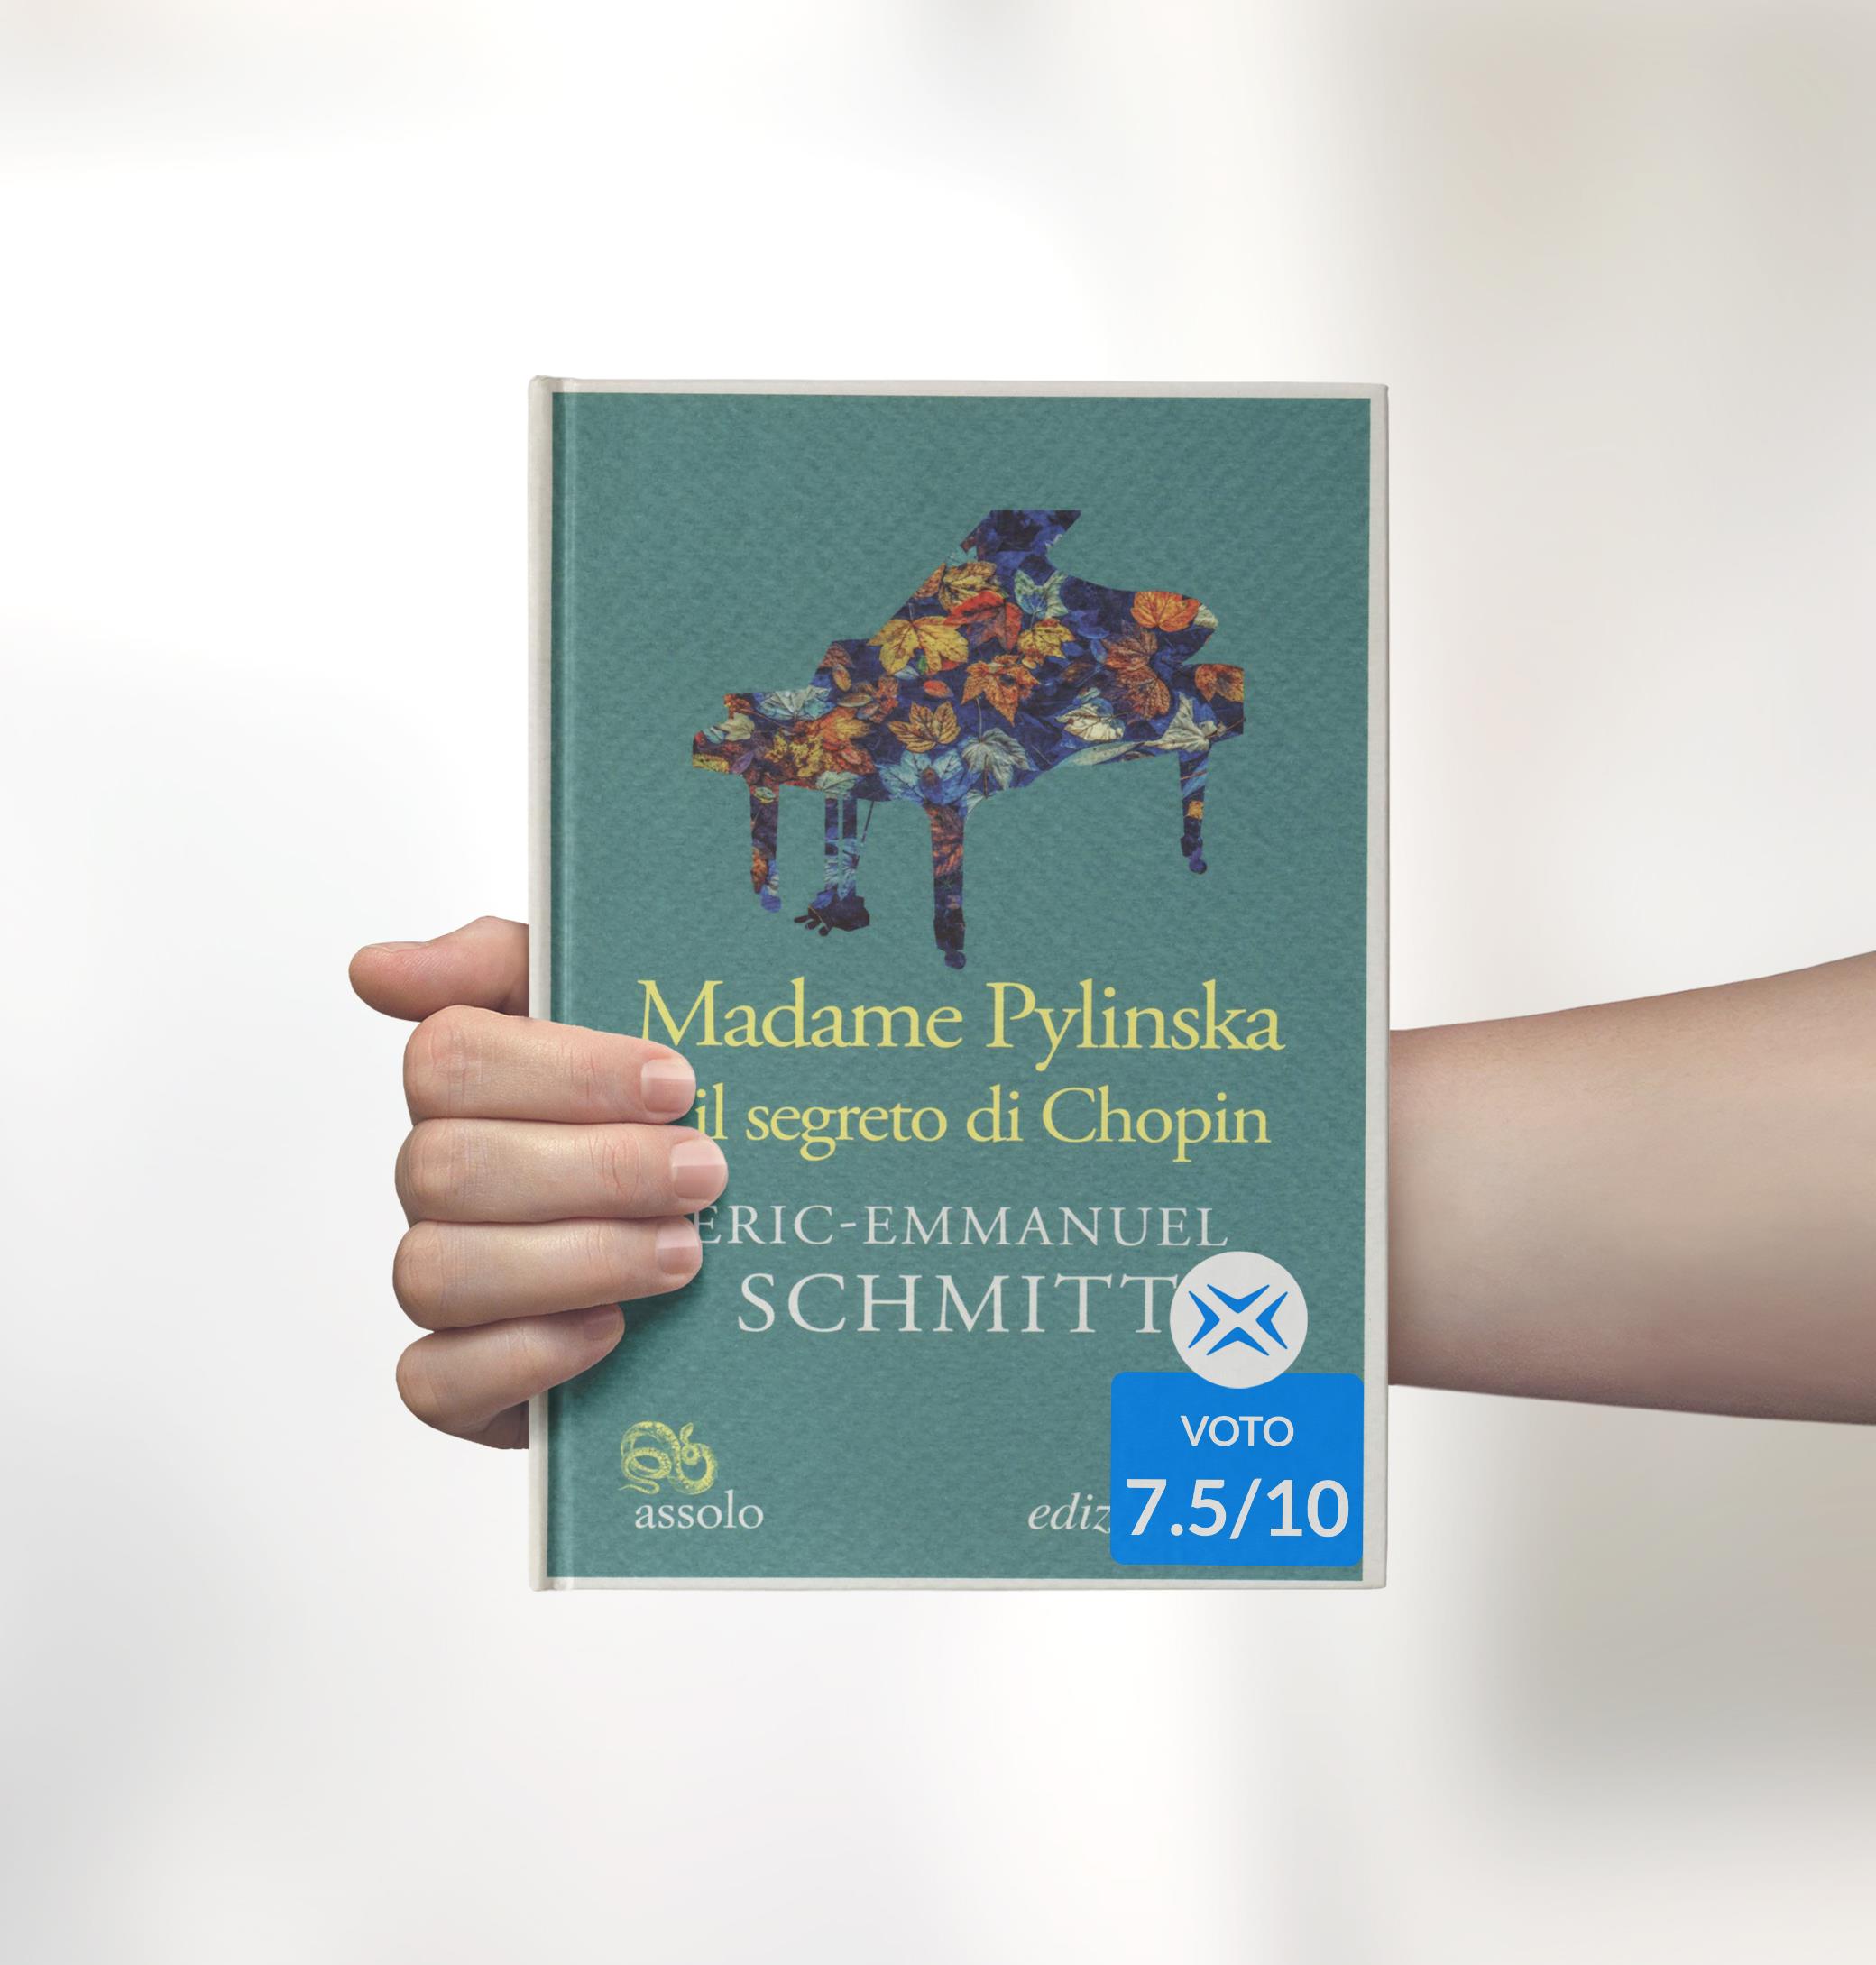 Madame Pylinska e il segreto di Chopin, cover del libro con voto